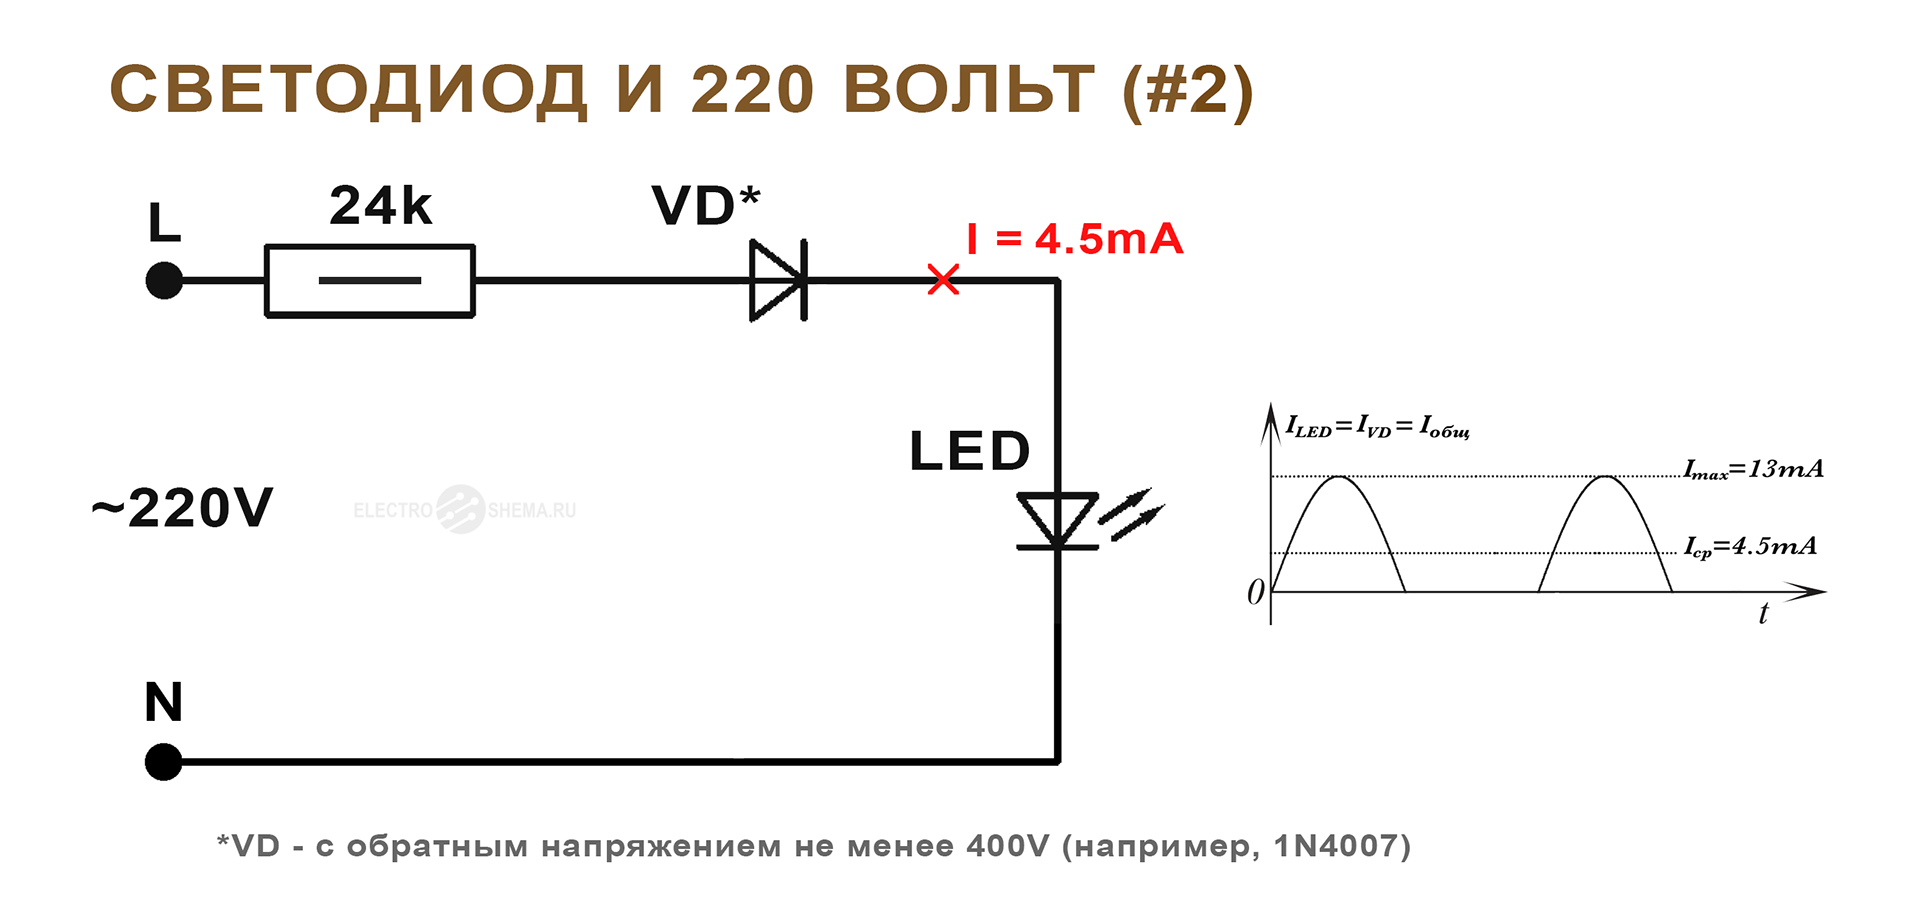 Подключение светодиода к 220В